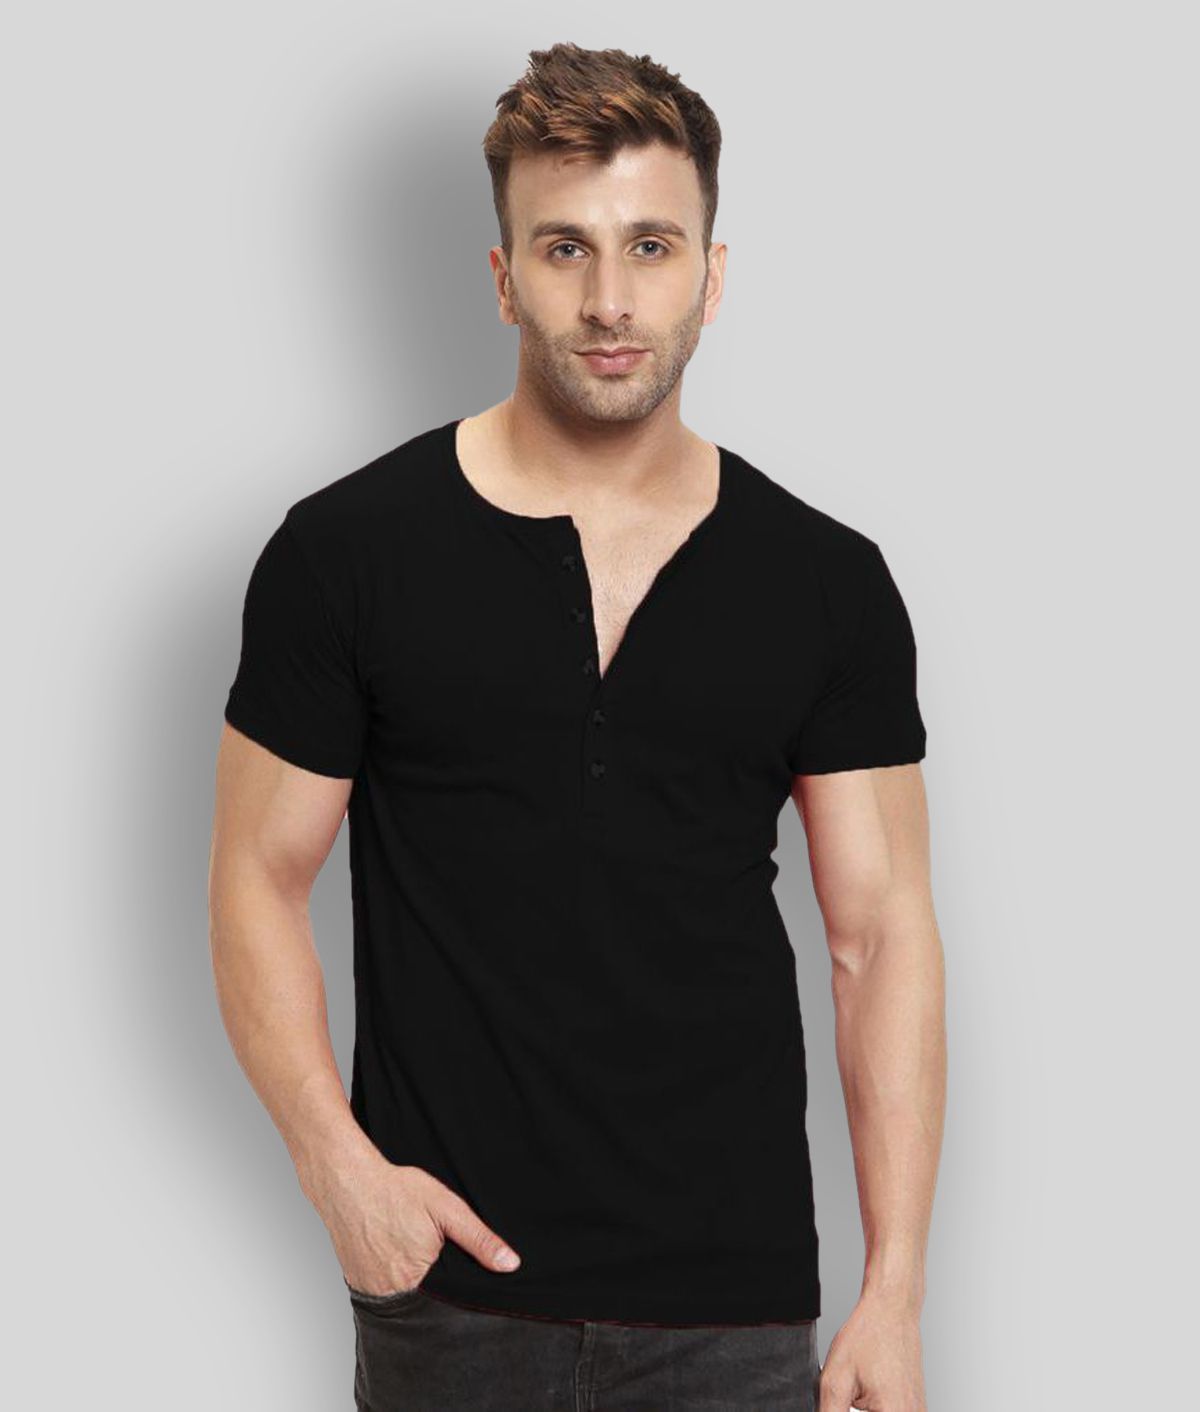     			Leotude - Black Cotton Blend Regular Fit Men's T-Shirt ( Pack of 1 )